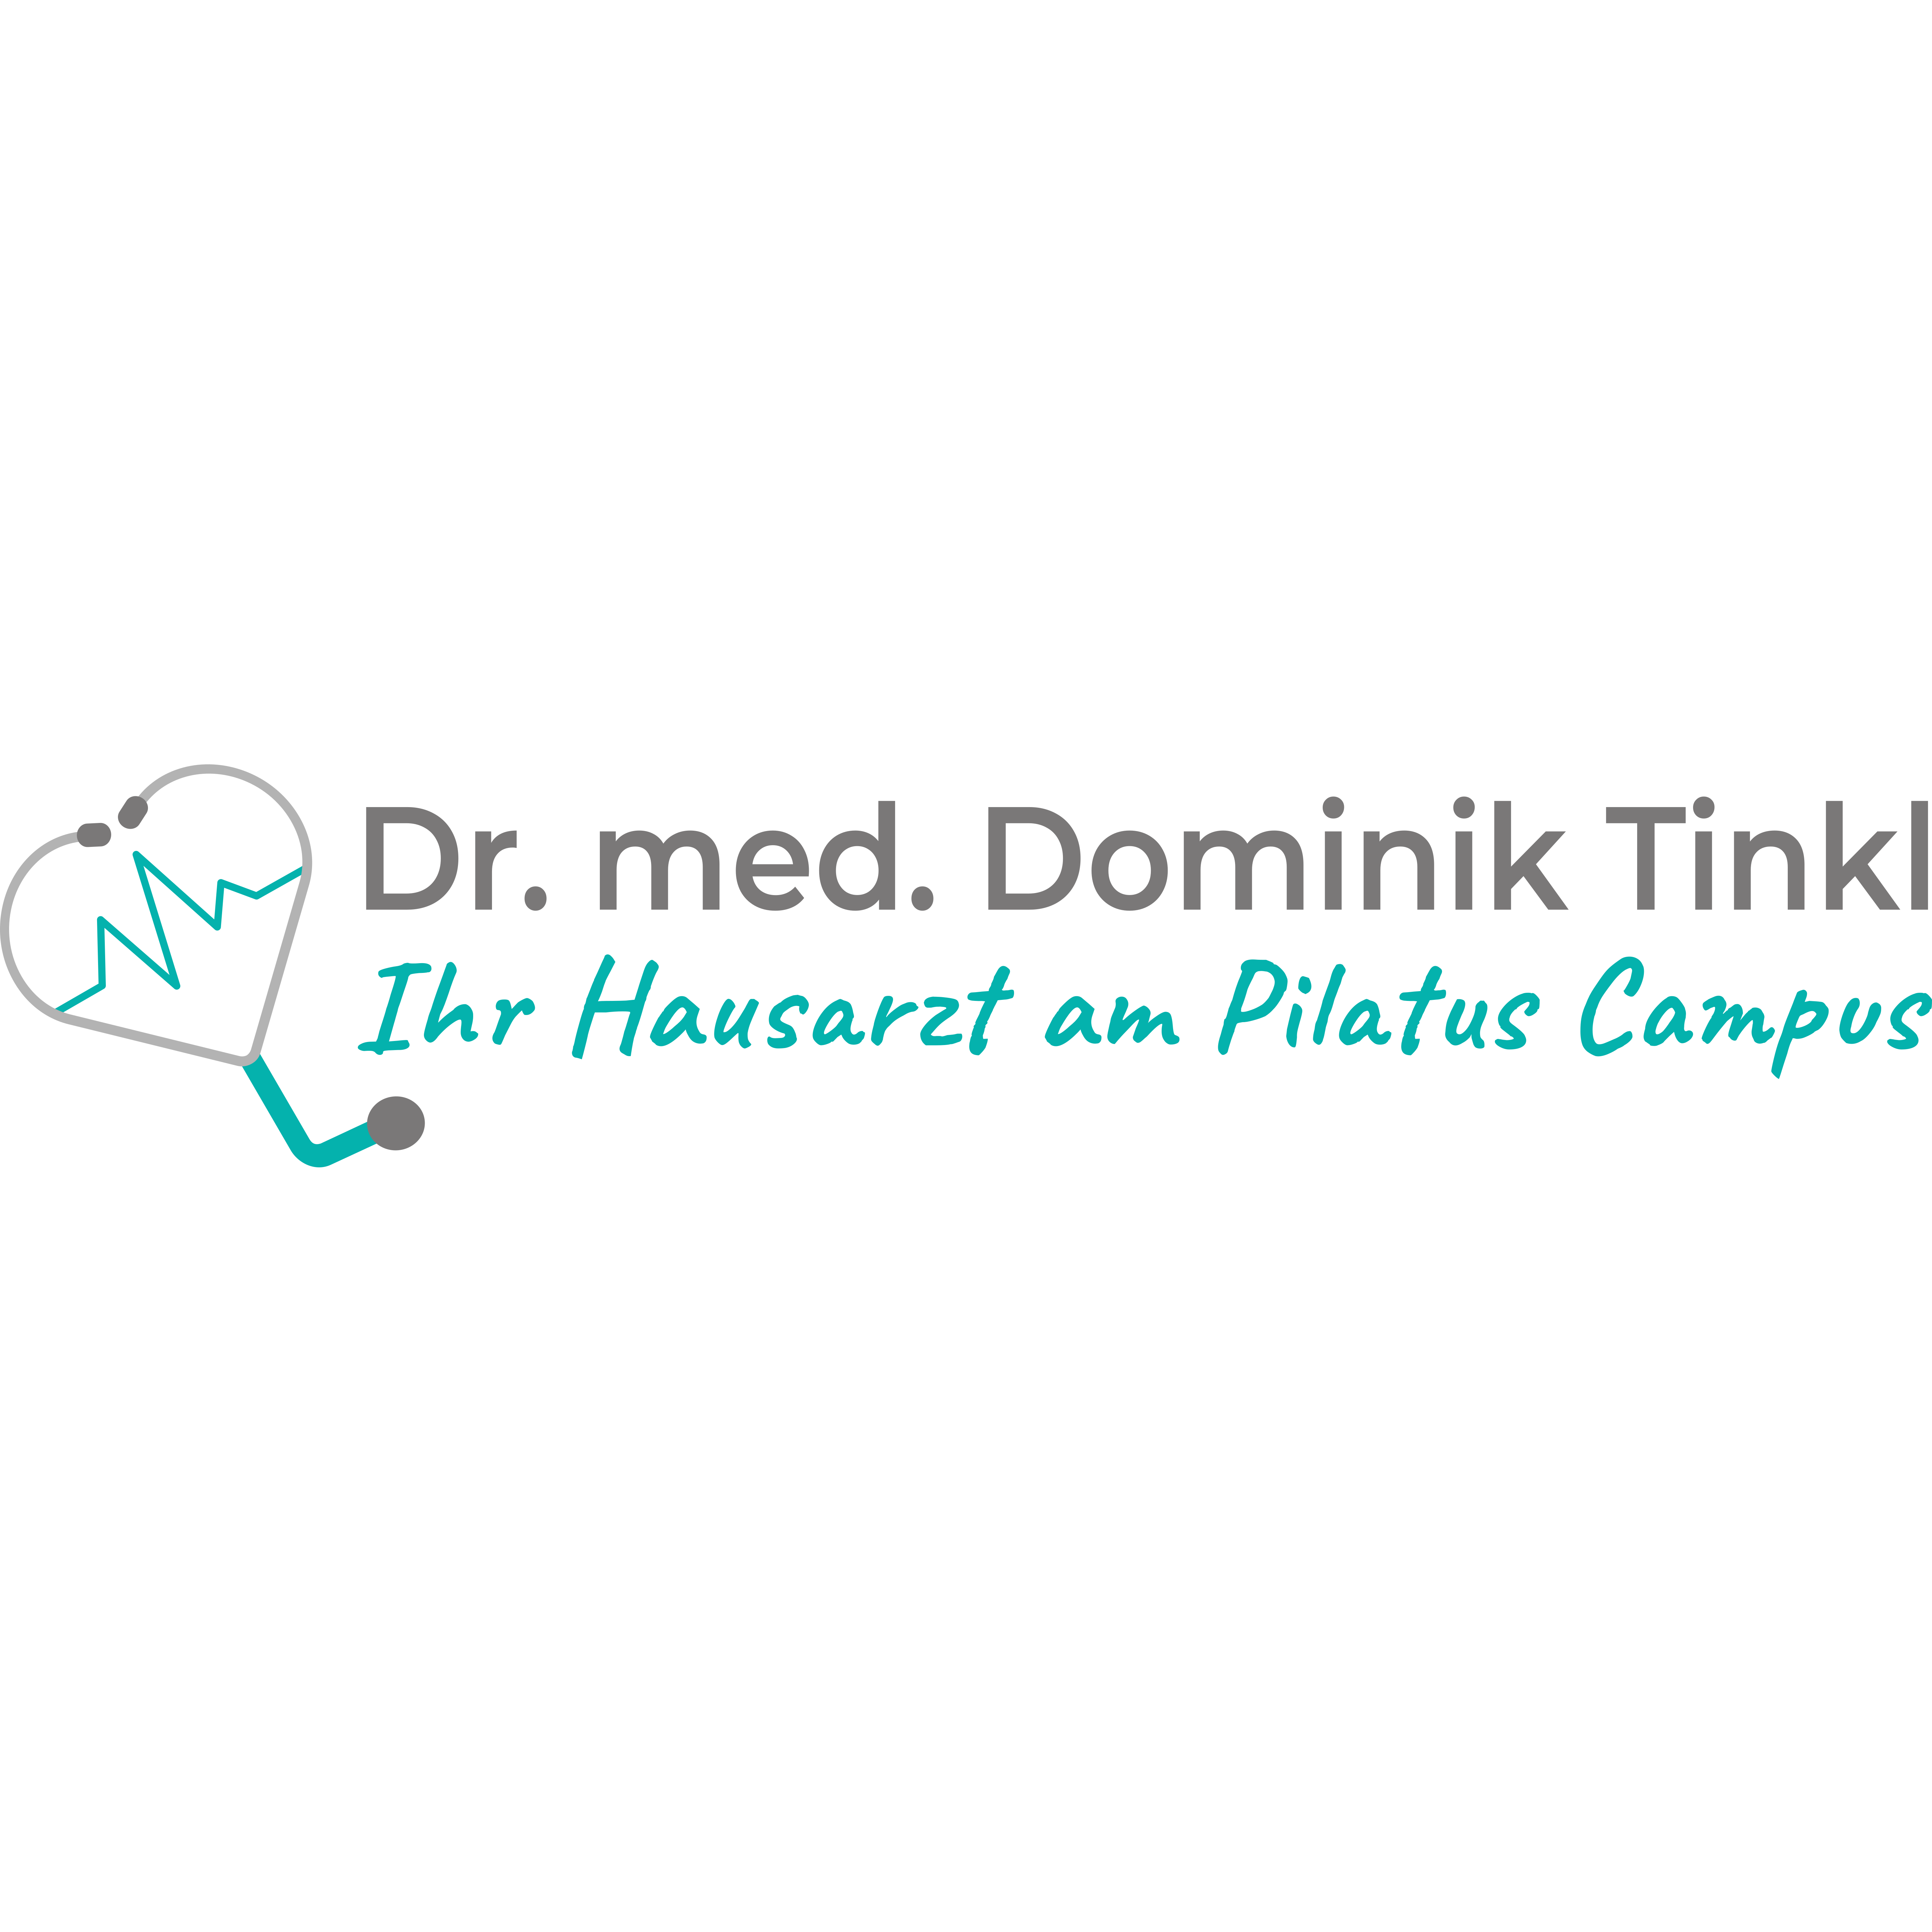 Dr. med. Dominik Tinkl - Ihr Hausarzt am Pilatus Campus in Hausen in Oberfranken - Logo